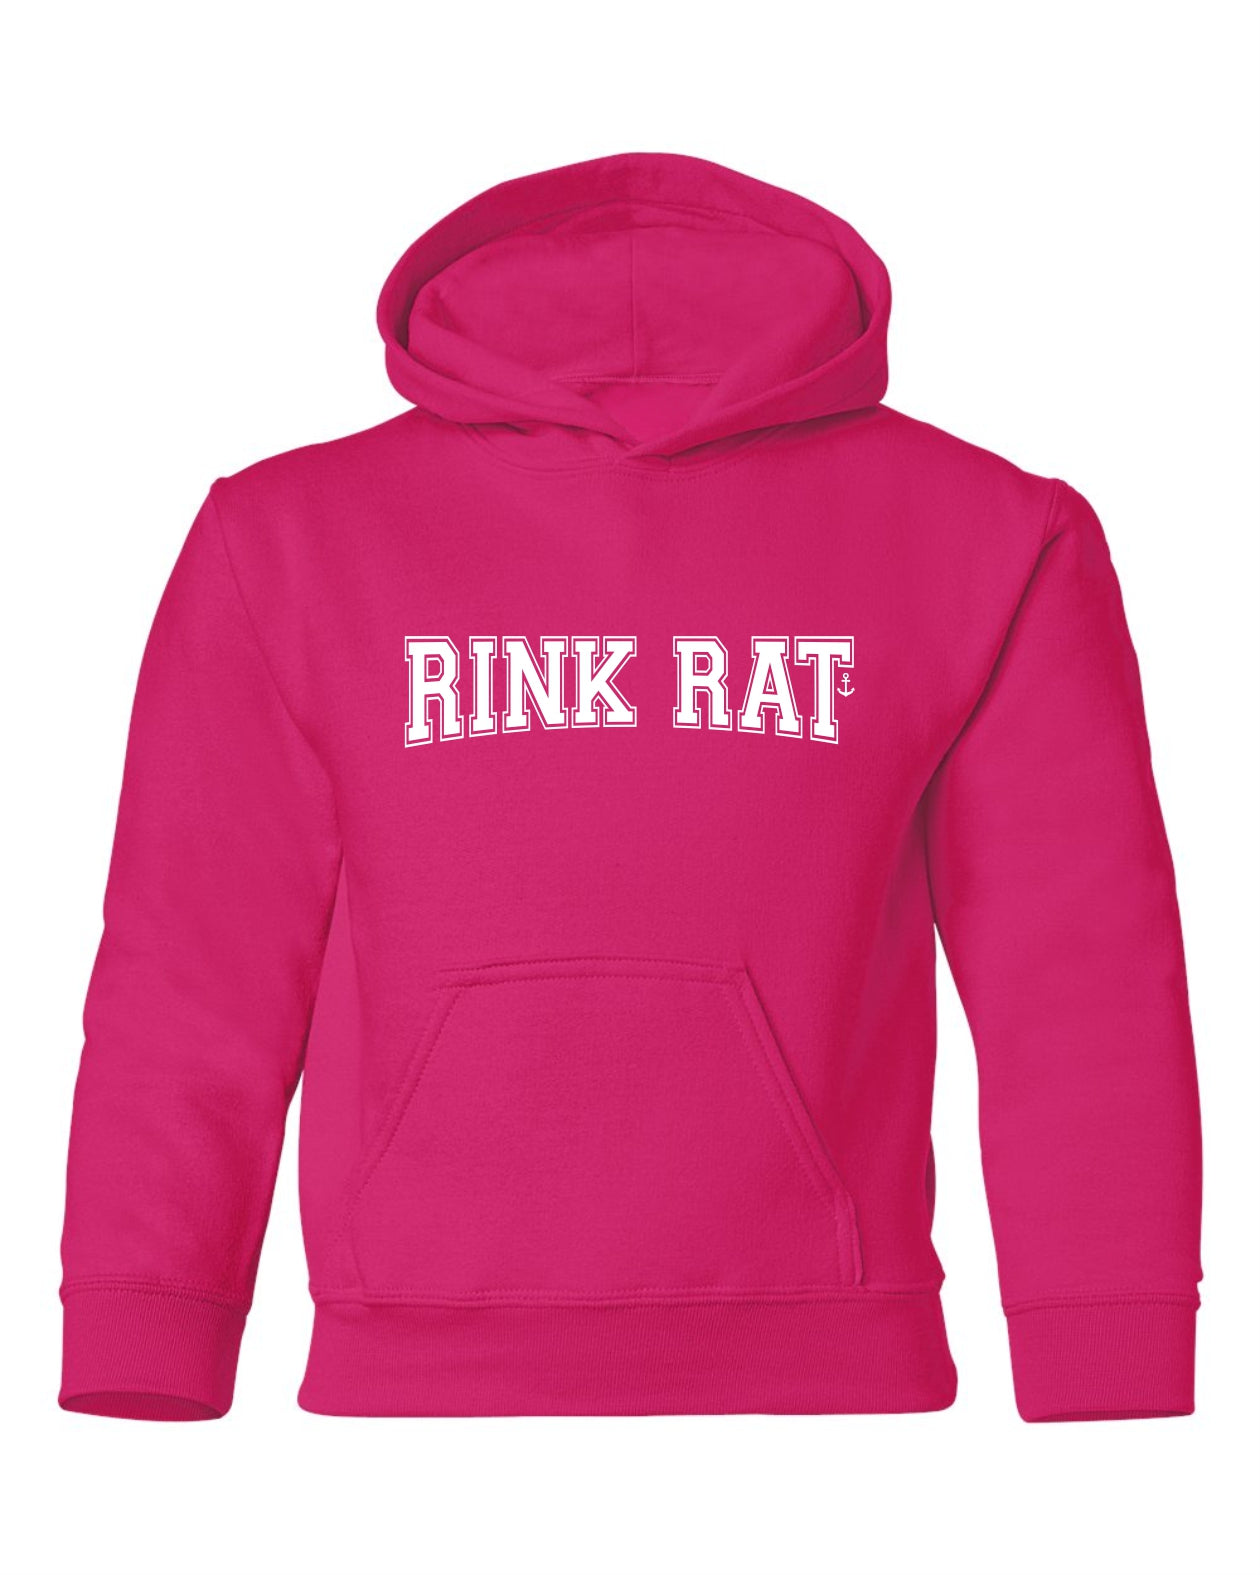 "Rink Rat" Youth Hoodie